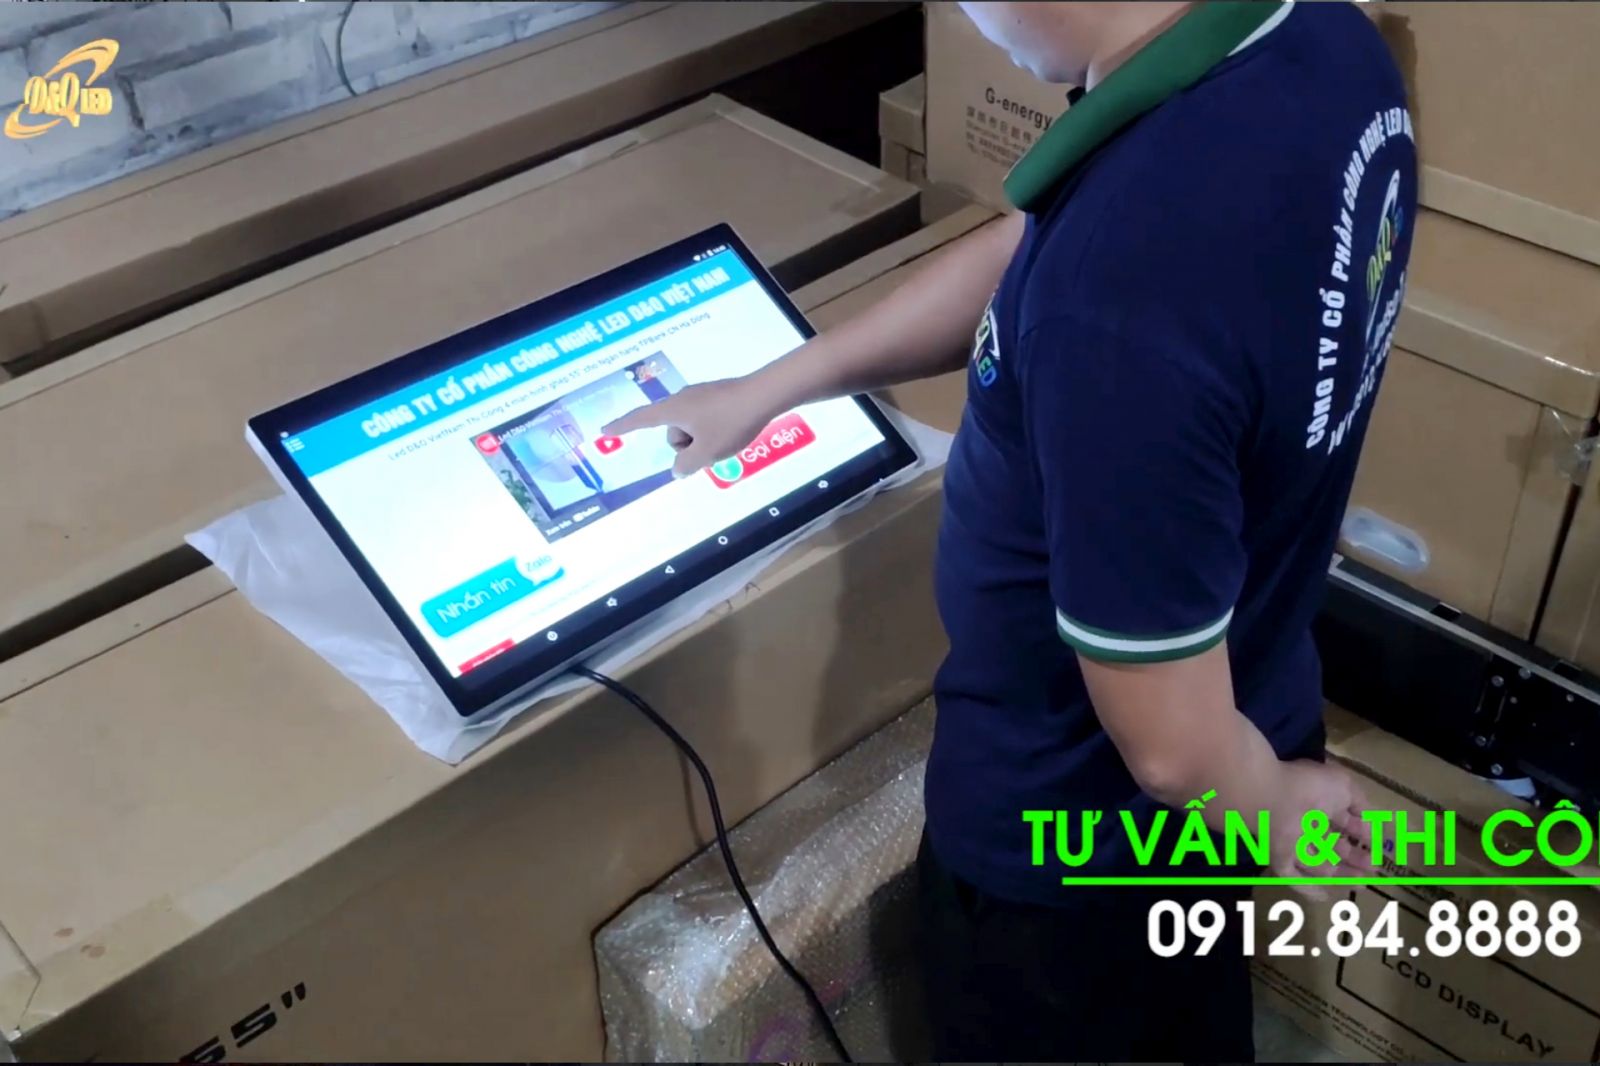 LCD Cảm Ứng 22inch Android | Được Cung Cấp bởi LED D&Q Việt Nam